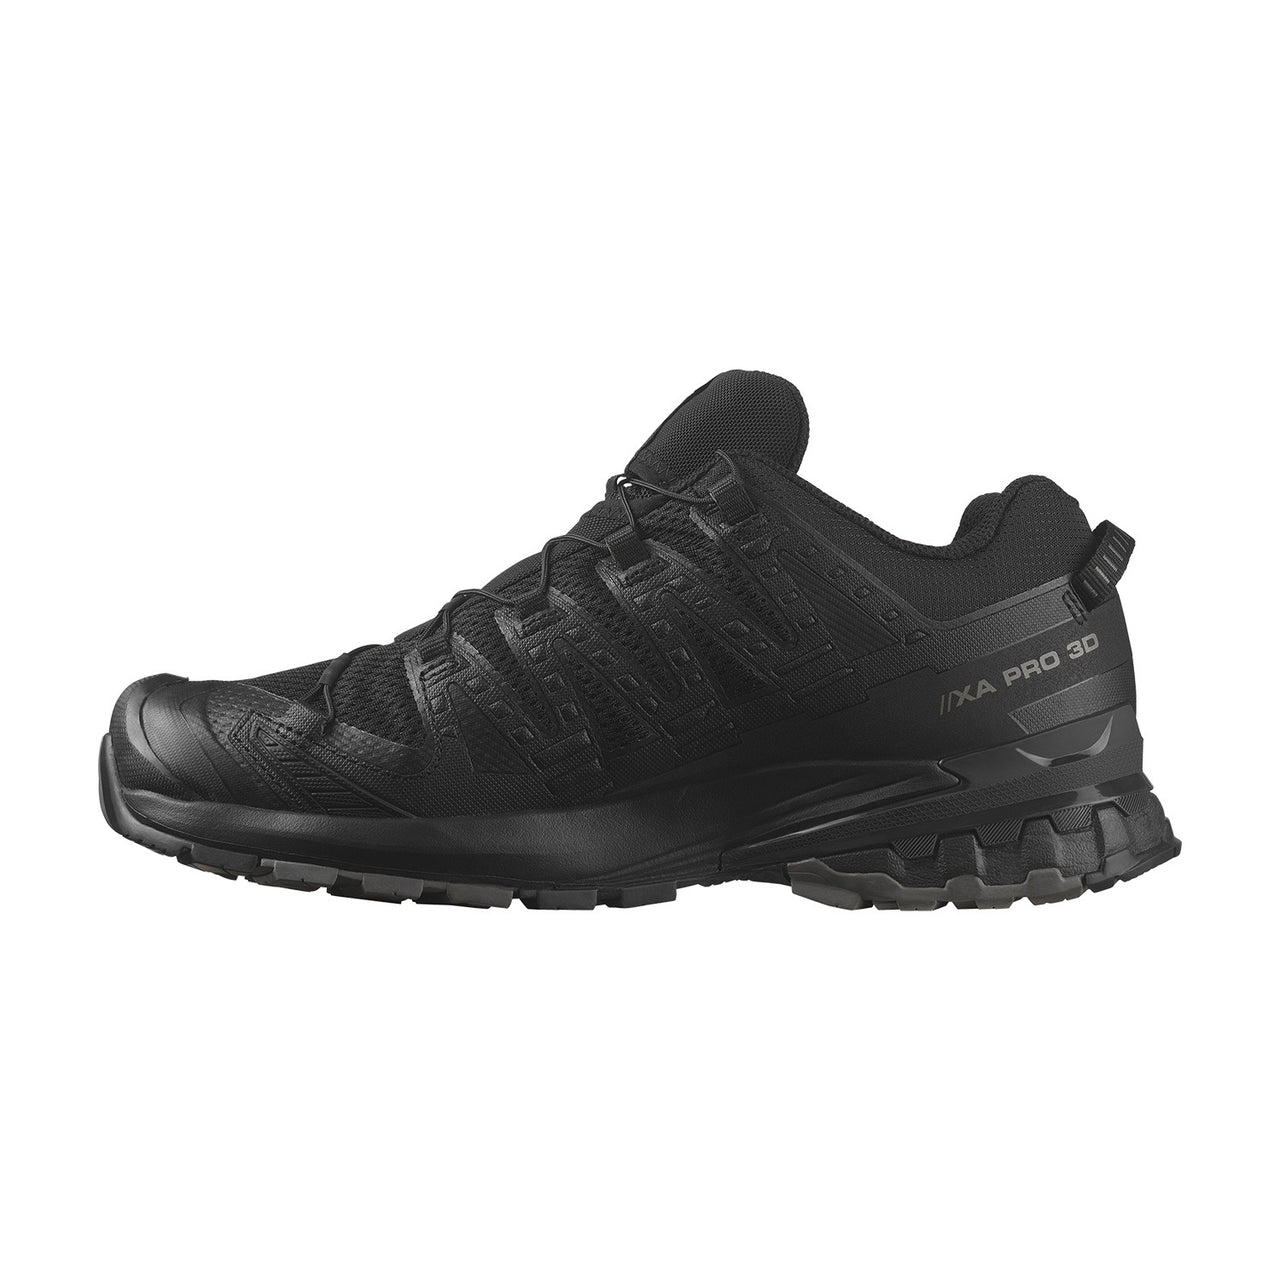 XA Pro 3D V9 Men's Trail Running Shoes Black/Phantom/Pewter